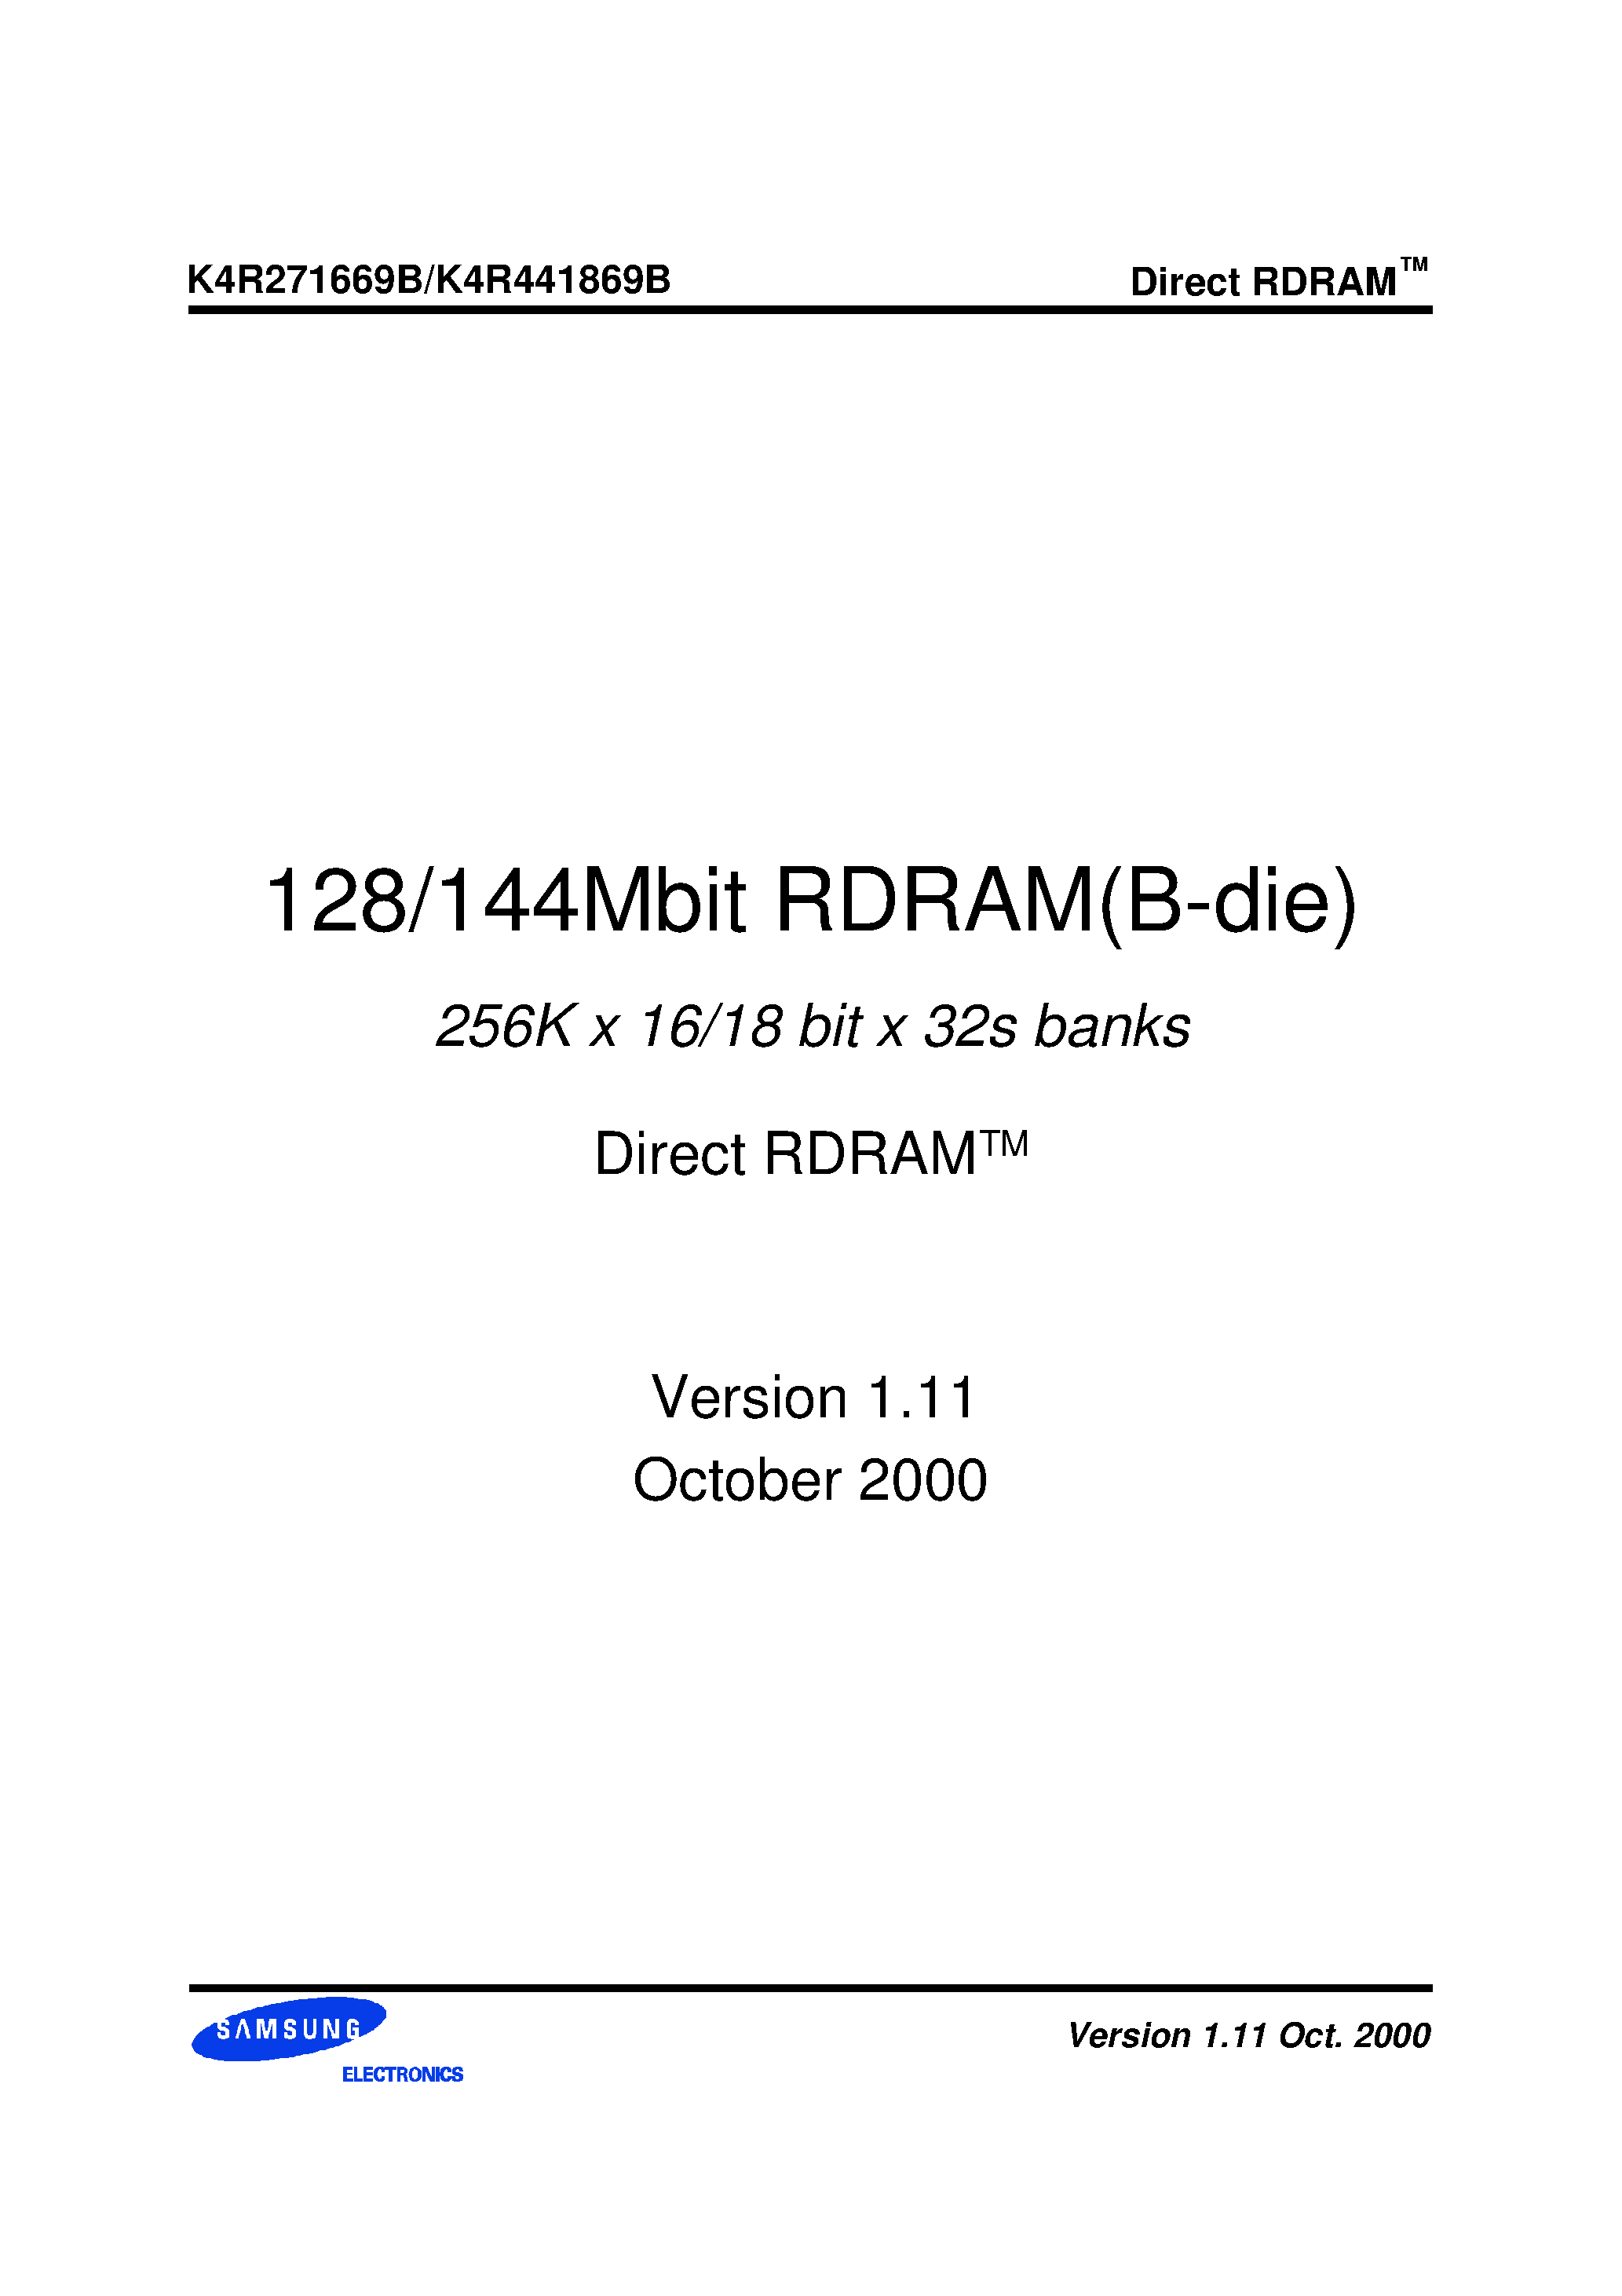 Даташит K4R441869B-N(M)CK8 - 256K x 16/18 bit x 32s banks Direct RDRAMTM страница 1